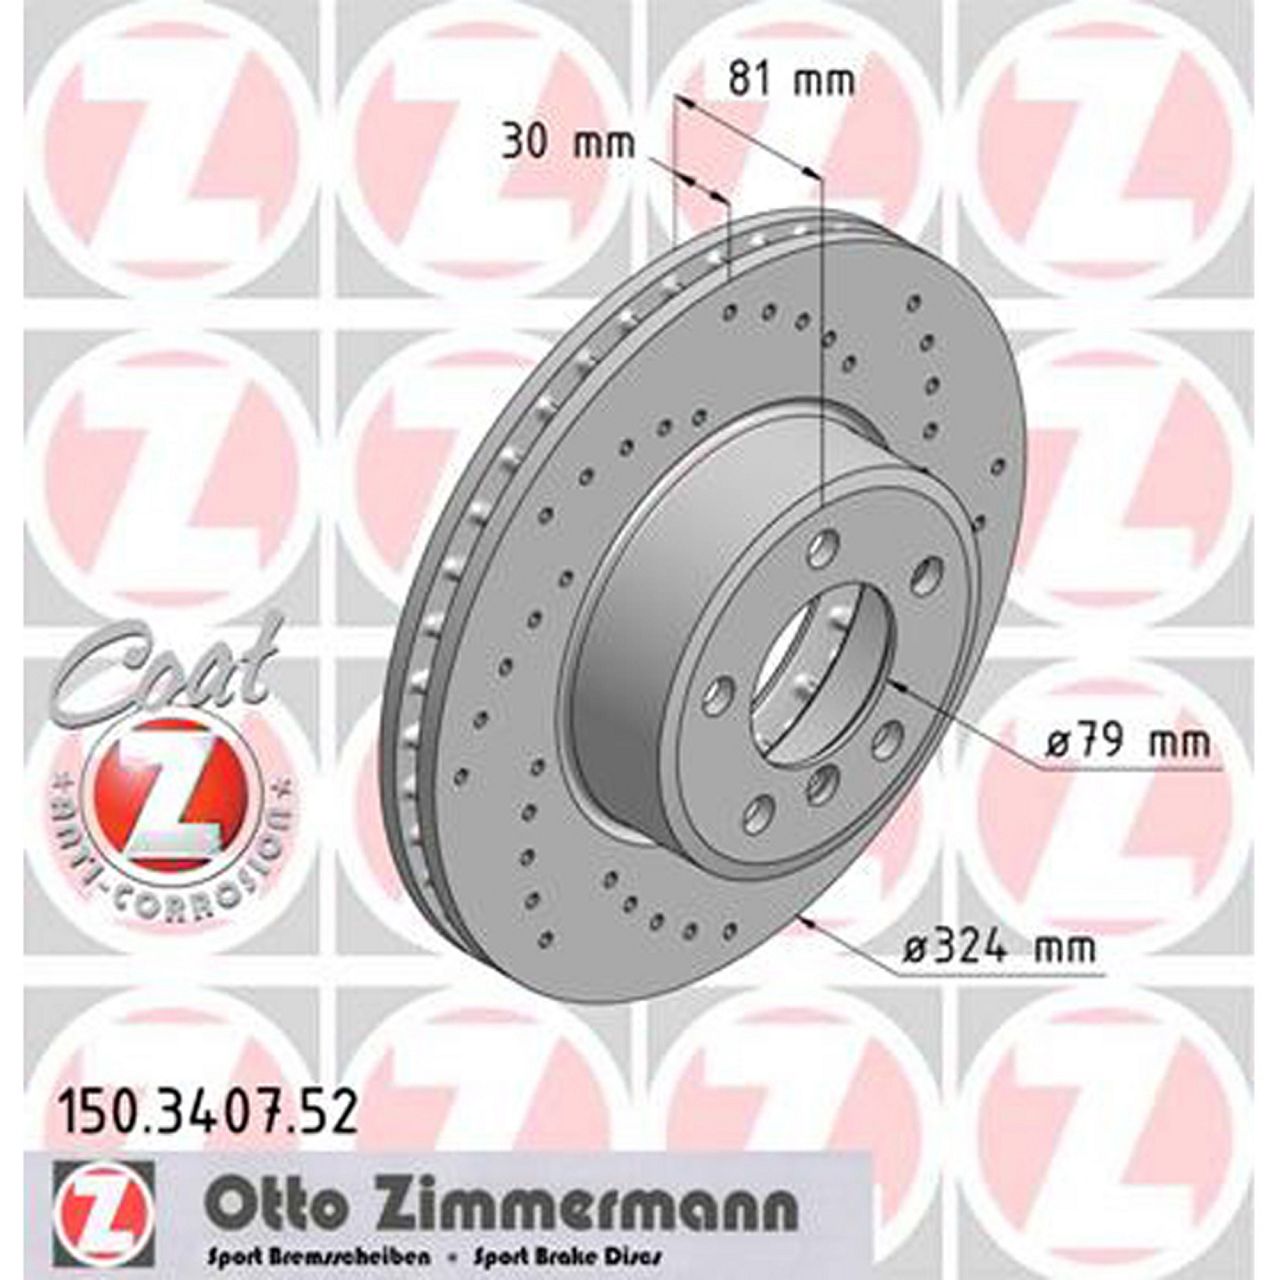 Zimmermann SPORT Bremsscheiben + Beläge + Wako BMW 7er E65-67 730i 735i 730d vorne